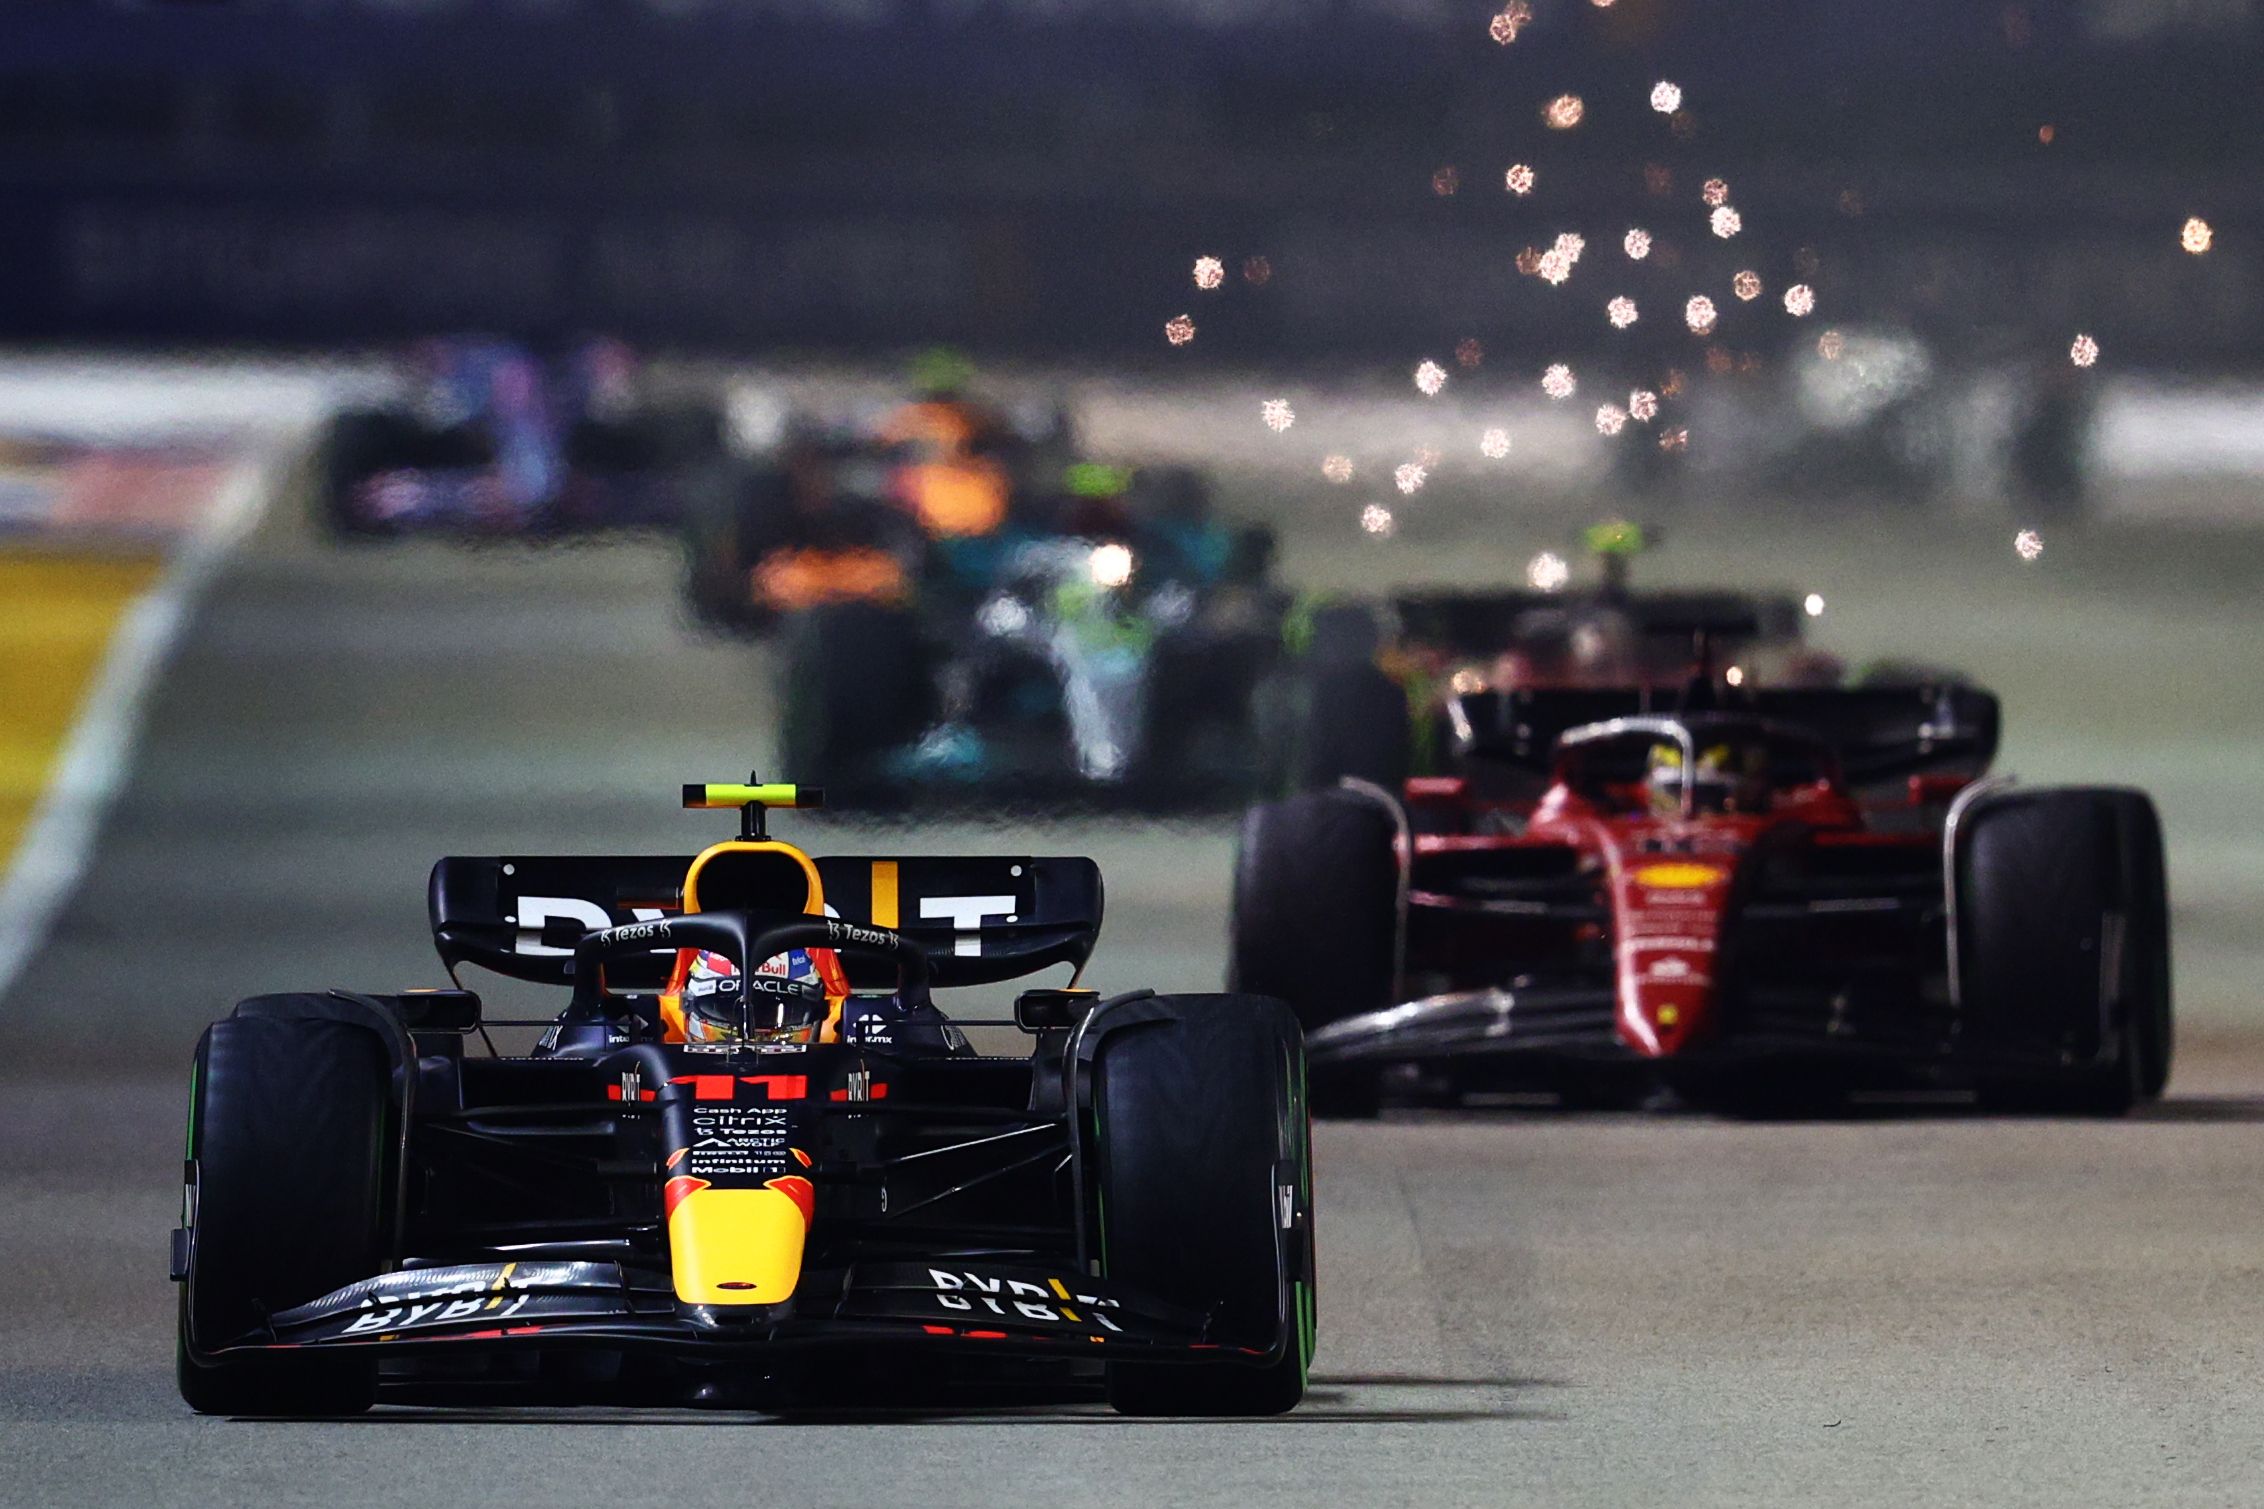 Sergio Perez leads the Singapore Grand Prix